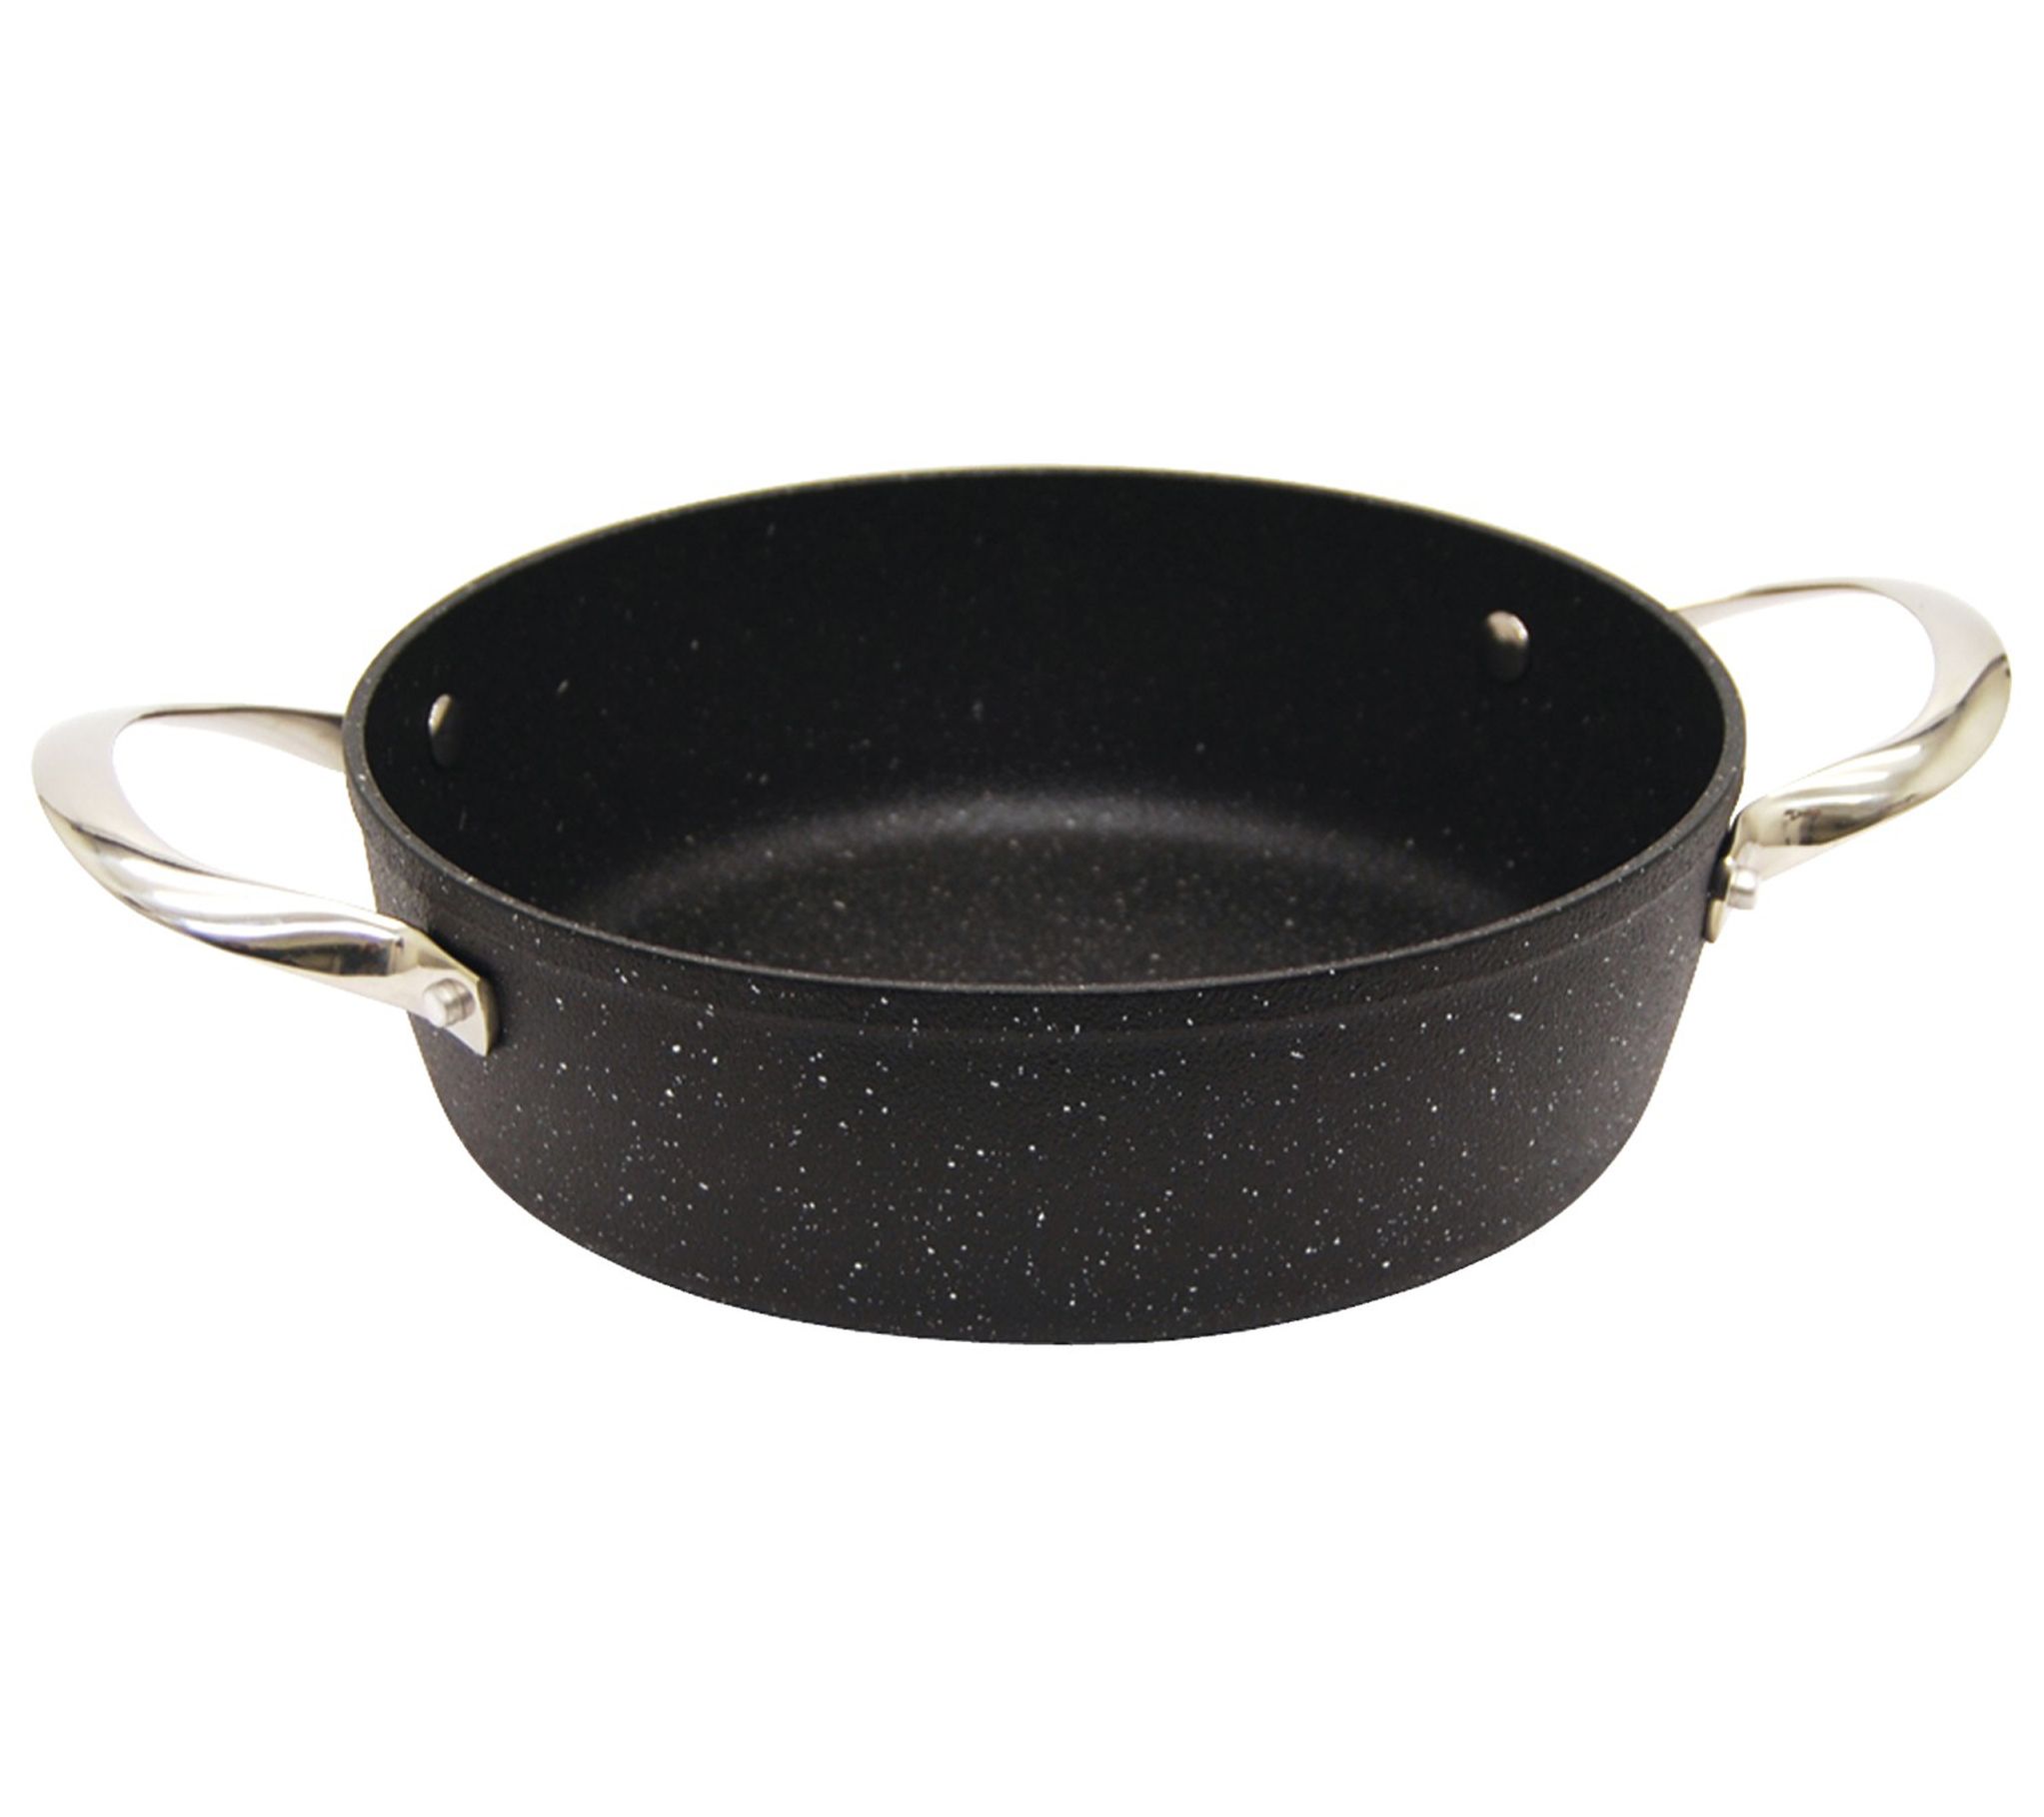 Starfrit The Rock Cookware Cooking Dishwasher Safe Oven Safe Black